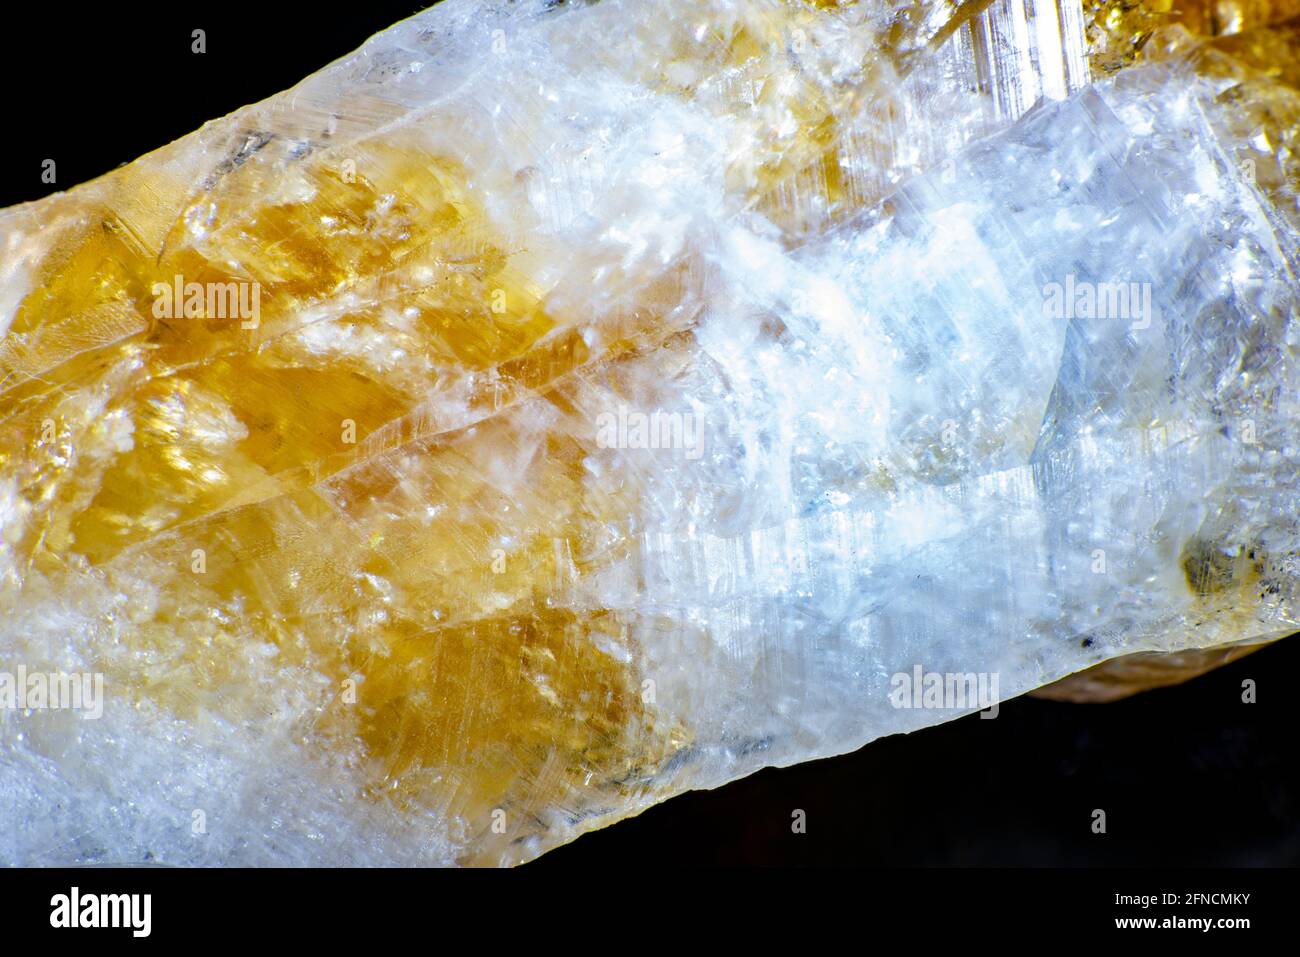 prise de vue macro d'un spécimen de roche naturelle. Cristal brut de pierre de quartz jaune citrine du Brésil. Fond doré chatoyant. Photo de haute qualité Banque D'Images